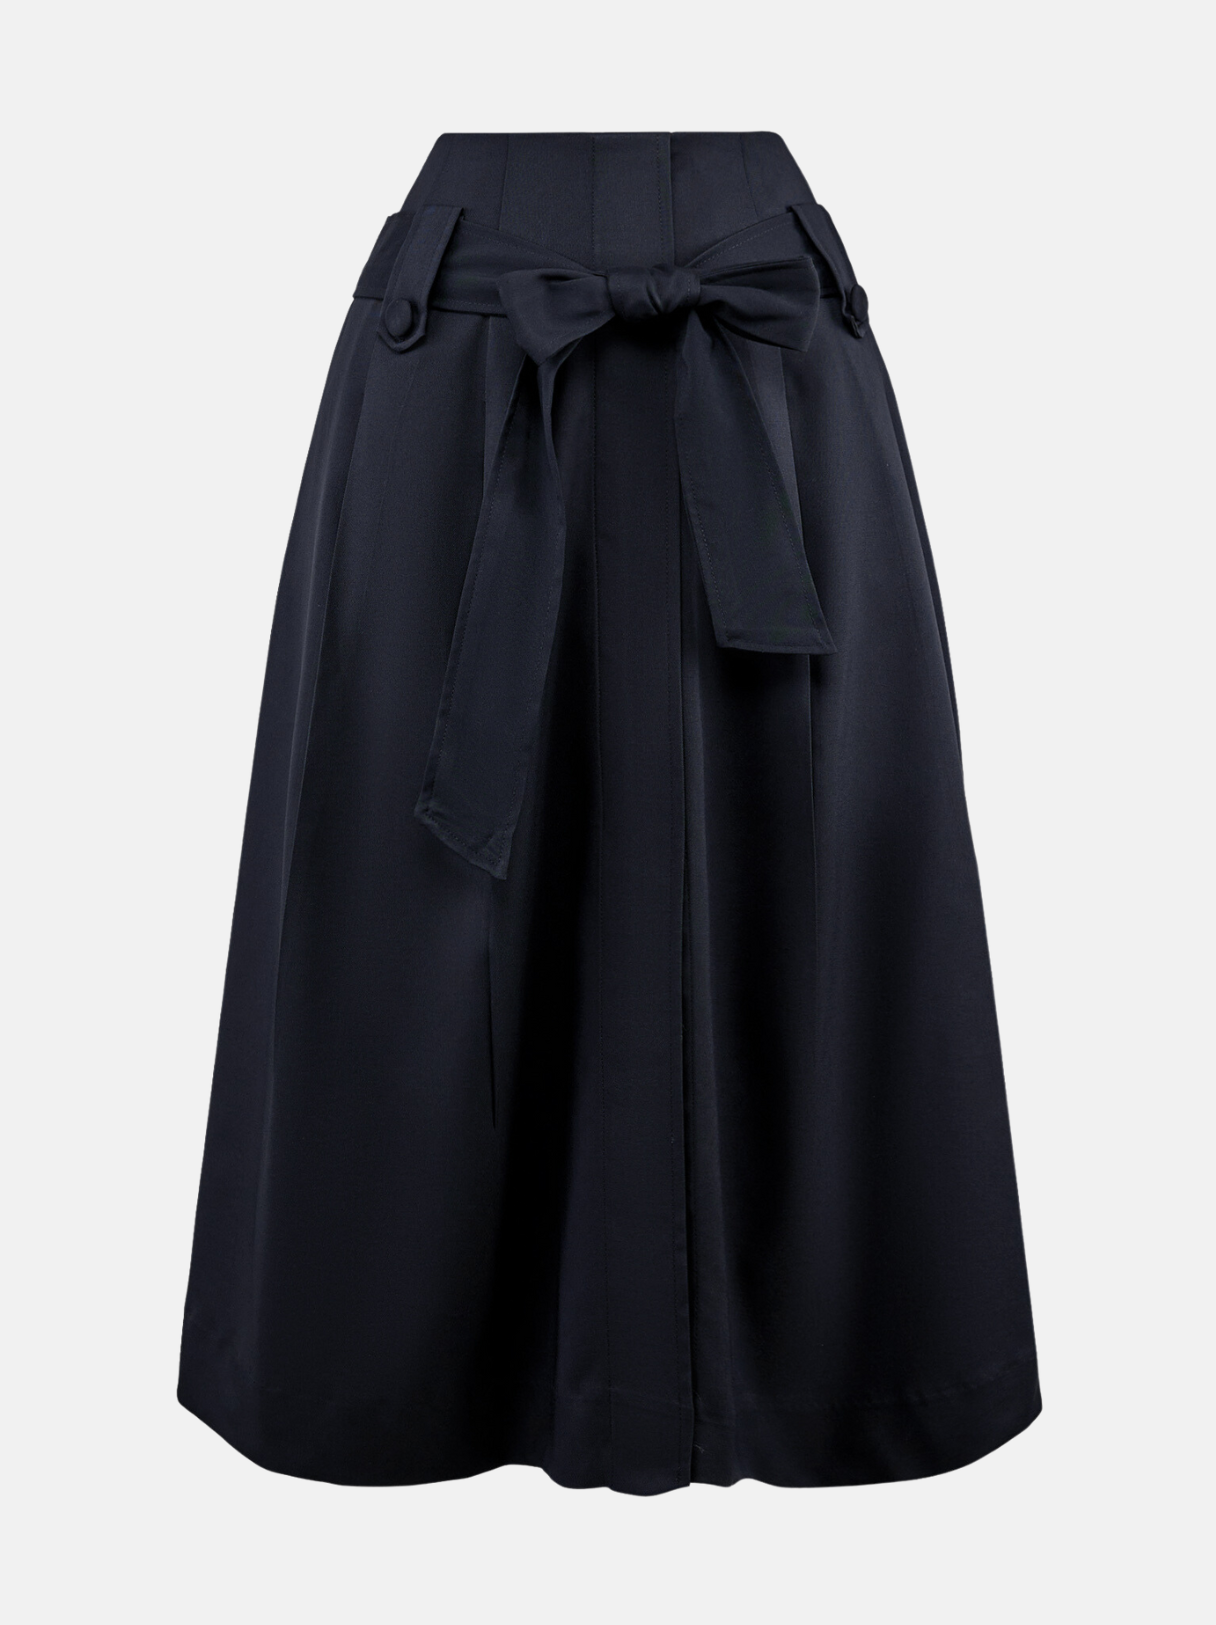 Mix đồ với chân váy xòe màu đen: nên kết hợp với áo gì? - ONOFF